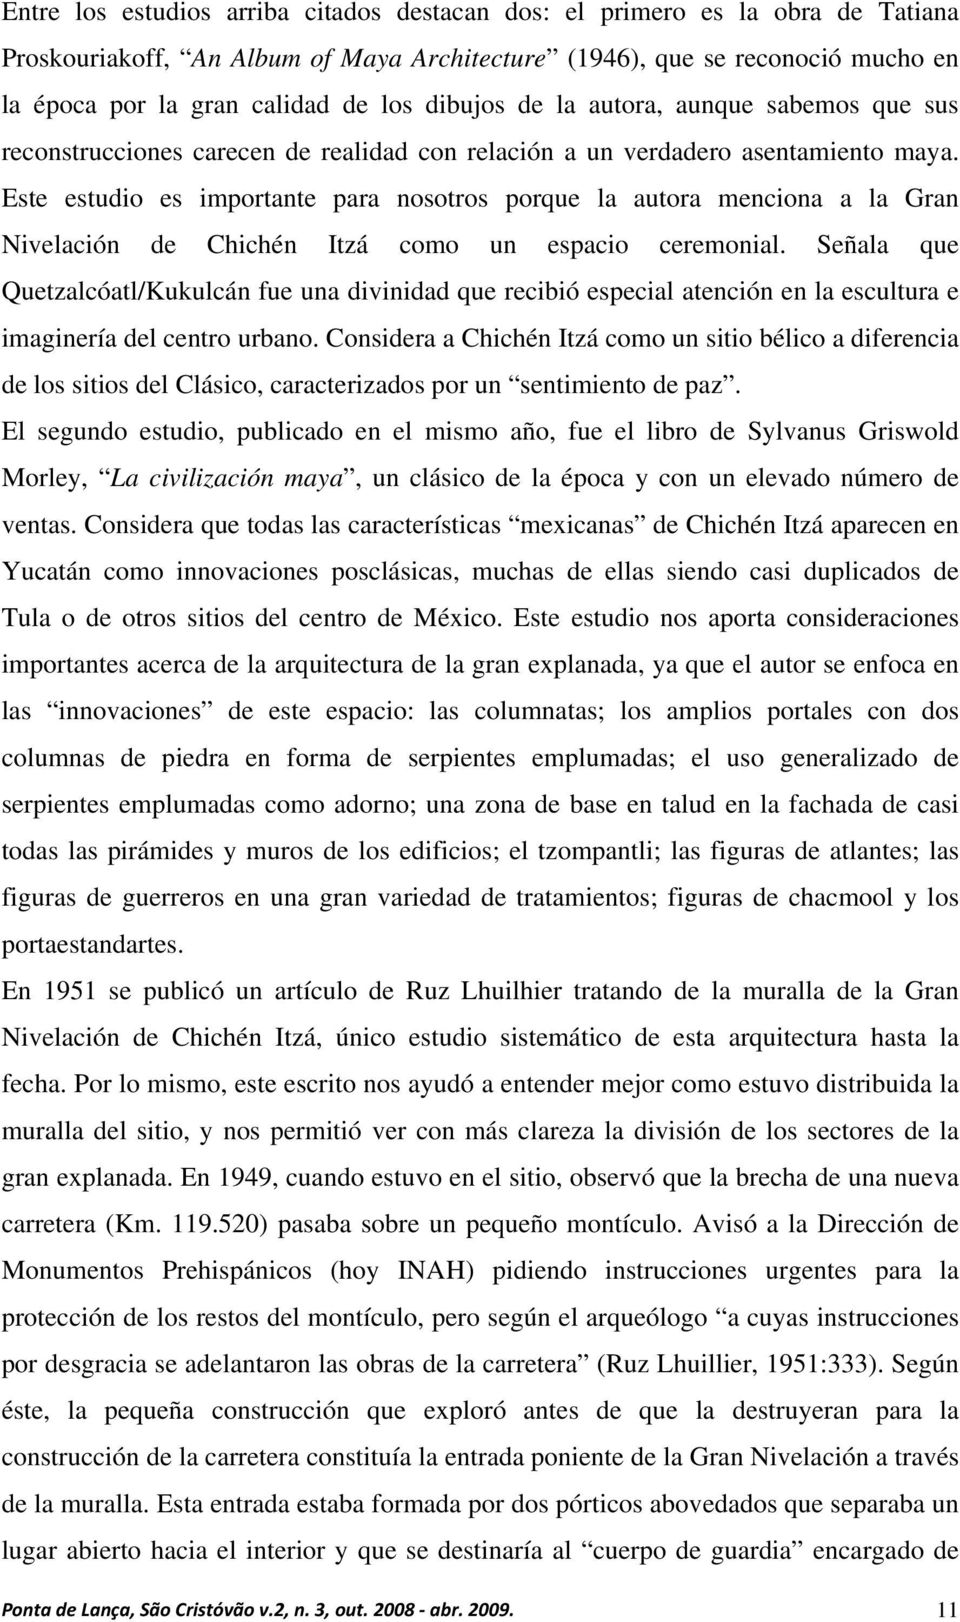 Este estudio es importante para nosotros porque la autora menciona a la Gran Nivelación de Chichén Itzá como un espacio ceremonial.